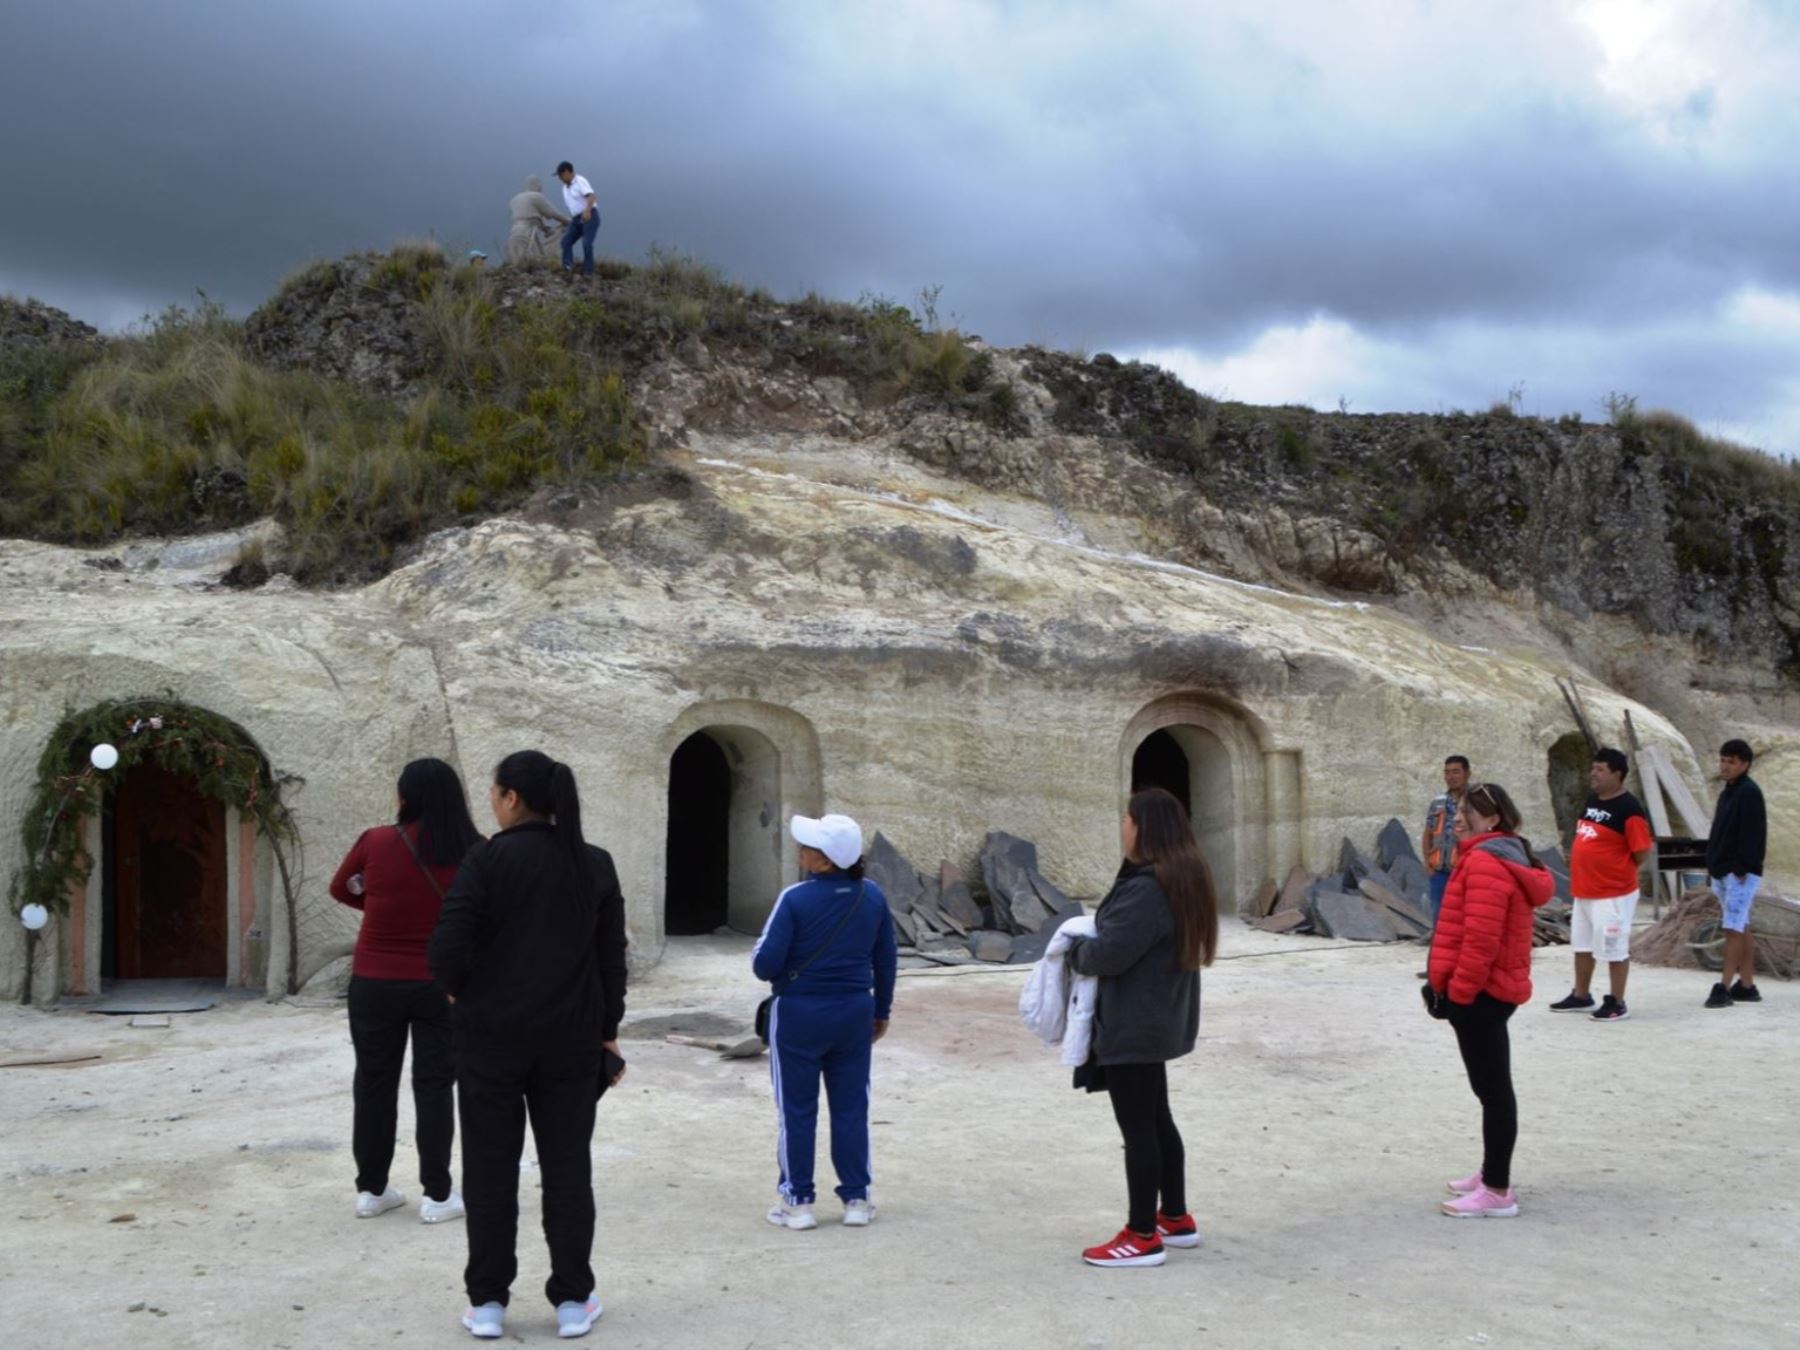 Antes de fines de enero abrirá sus puerta el primer hotel subterráneo en el Perú. Se ubica en el sector Llushcapampa, a 45 minutos de la ciudad de Cajamarca. Foto: Eduardo Lozano